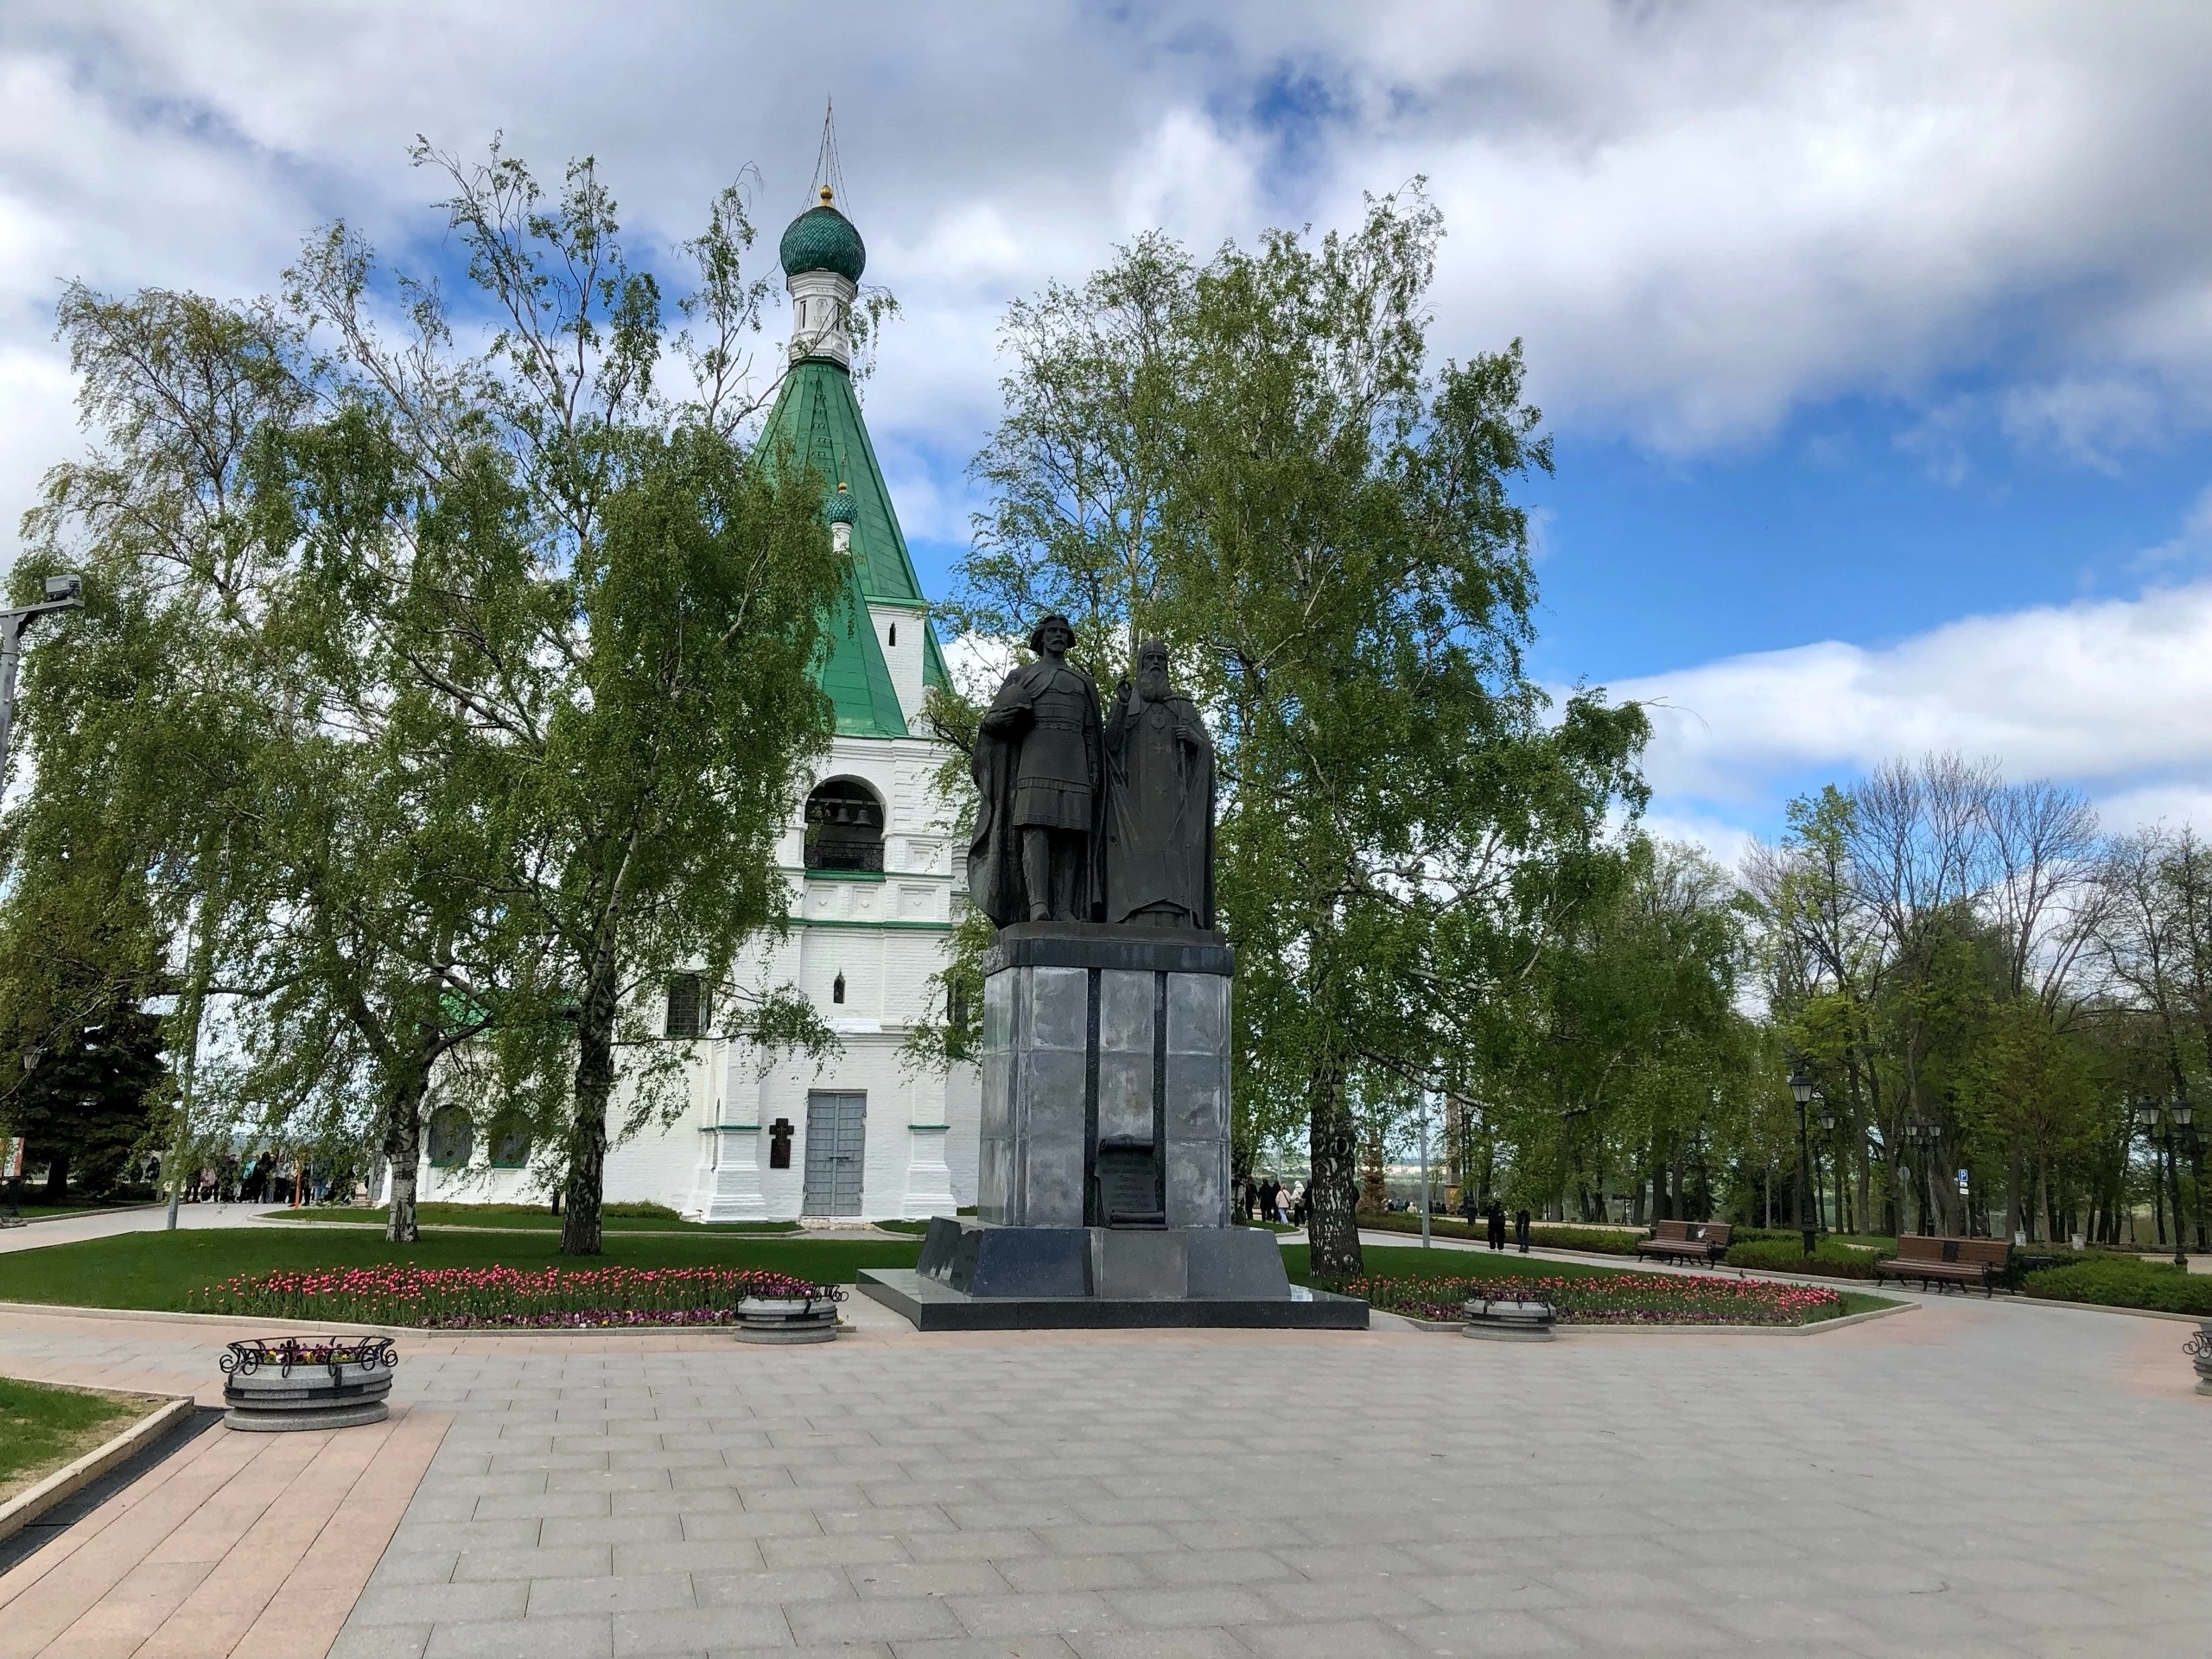 Ясно, но туманно: каким будет начало недели в Нижнем Новгороде 